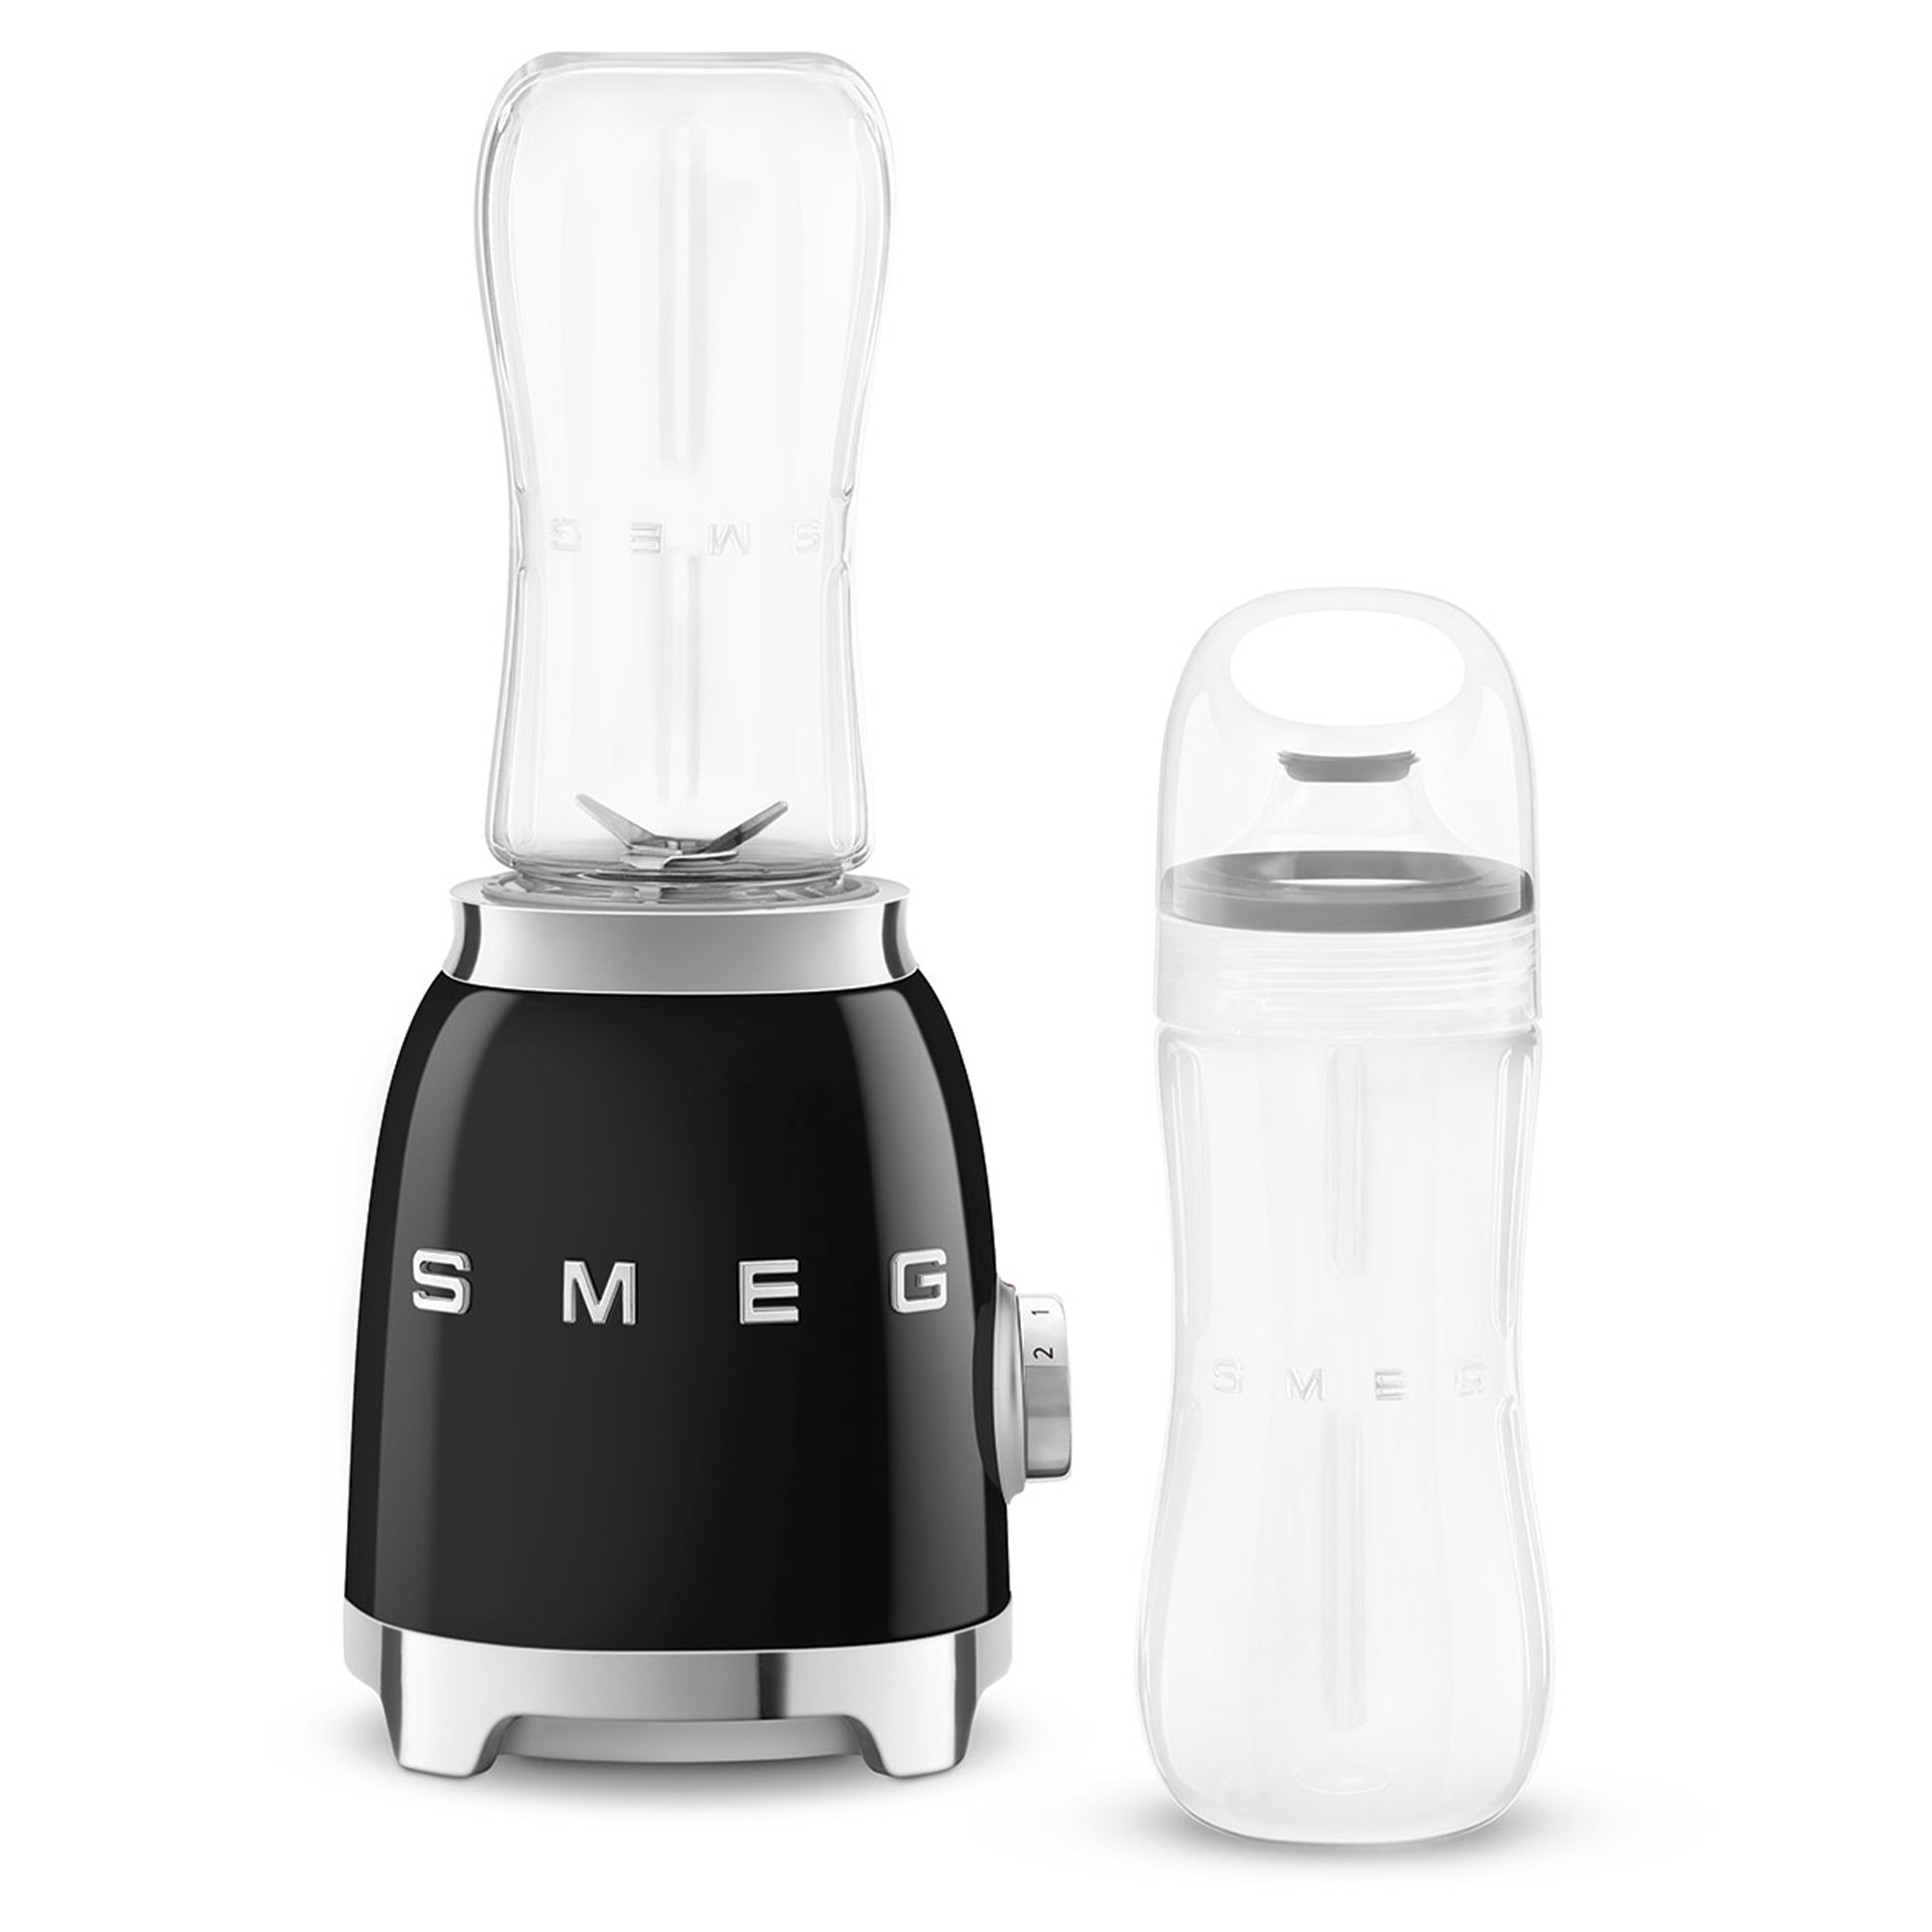 Smeg - Mini blender - design line style The 50 ° years